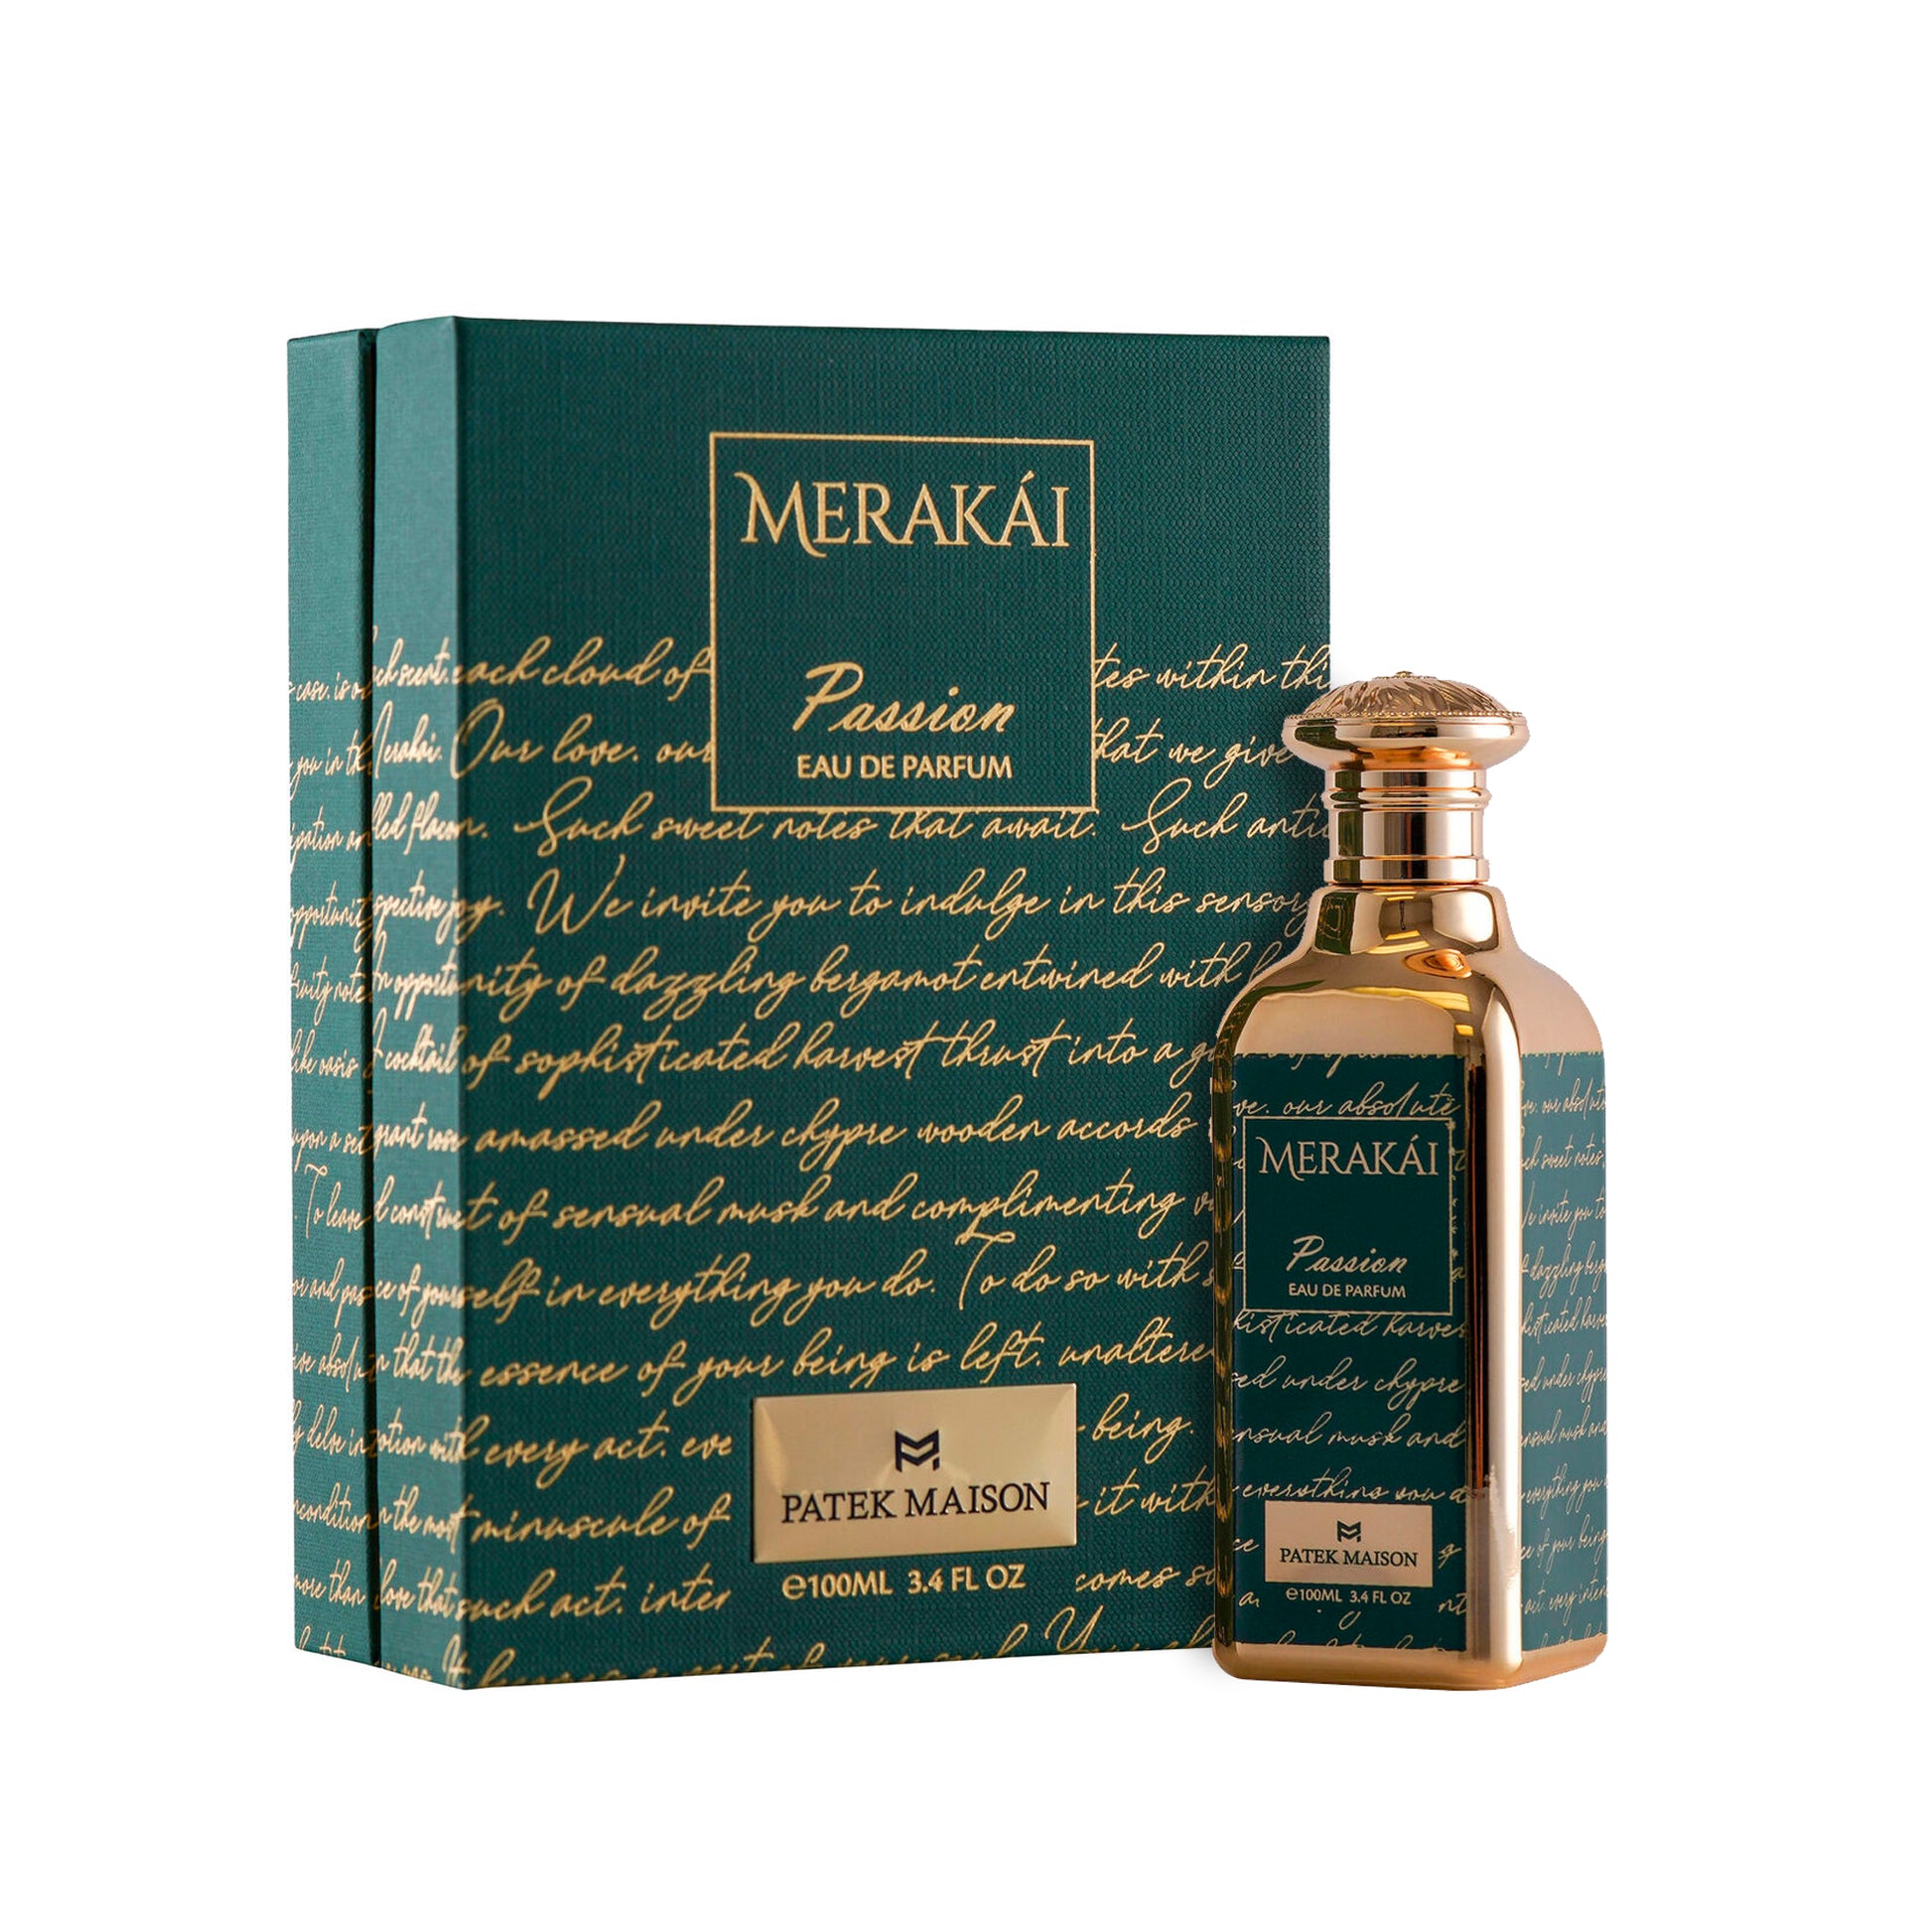 Merakai Passion Eau De Parfum Spray for Men and Women by Patek Maison 3.4 oz. Click to open in modal